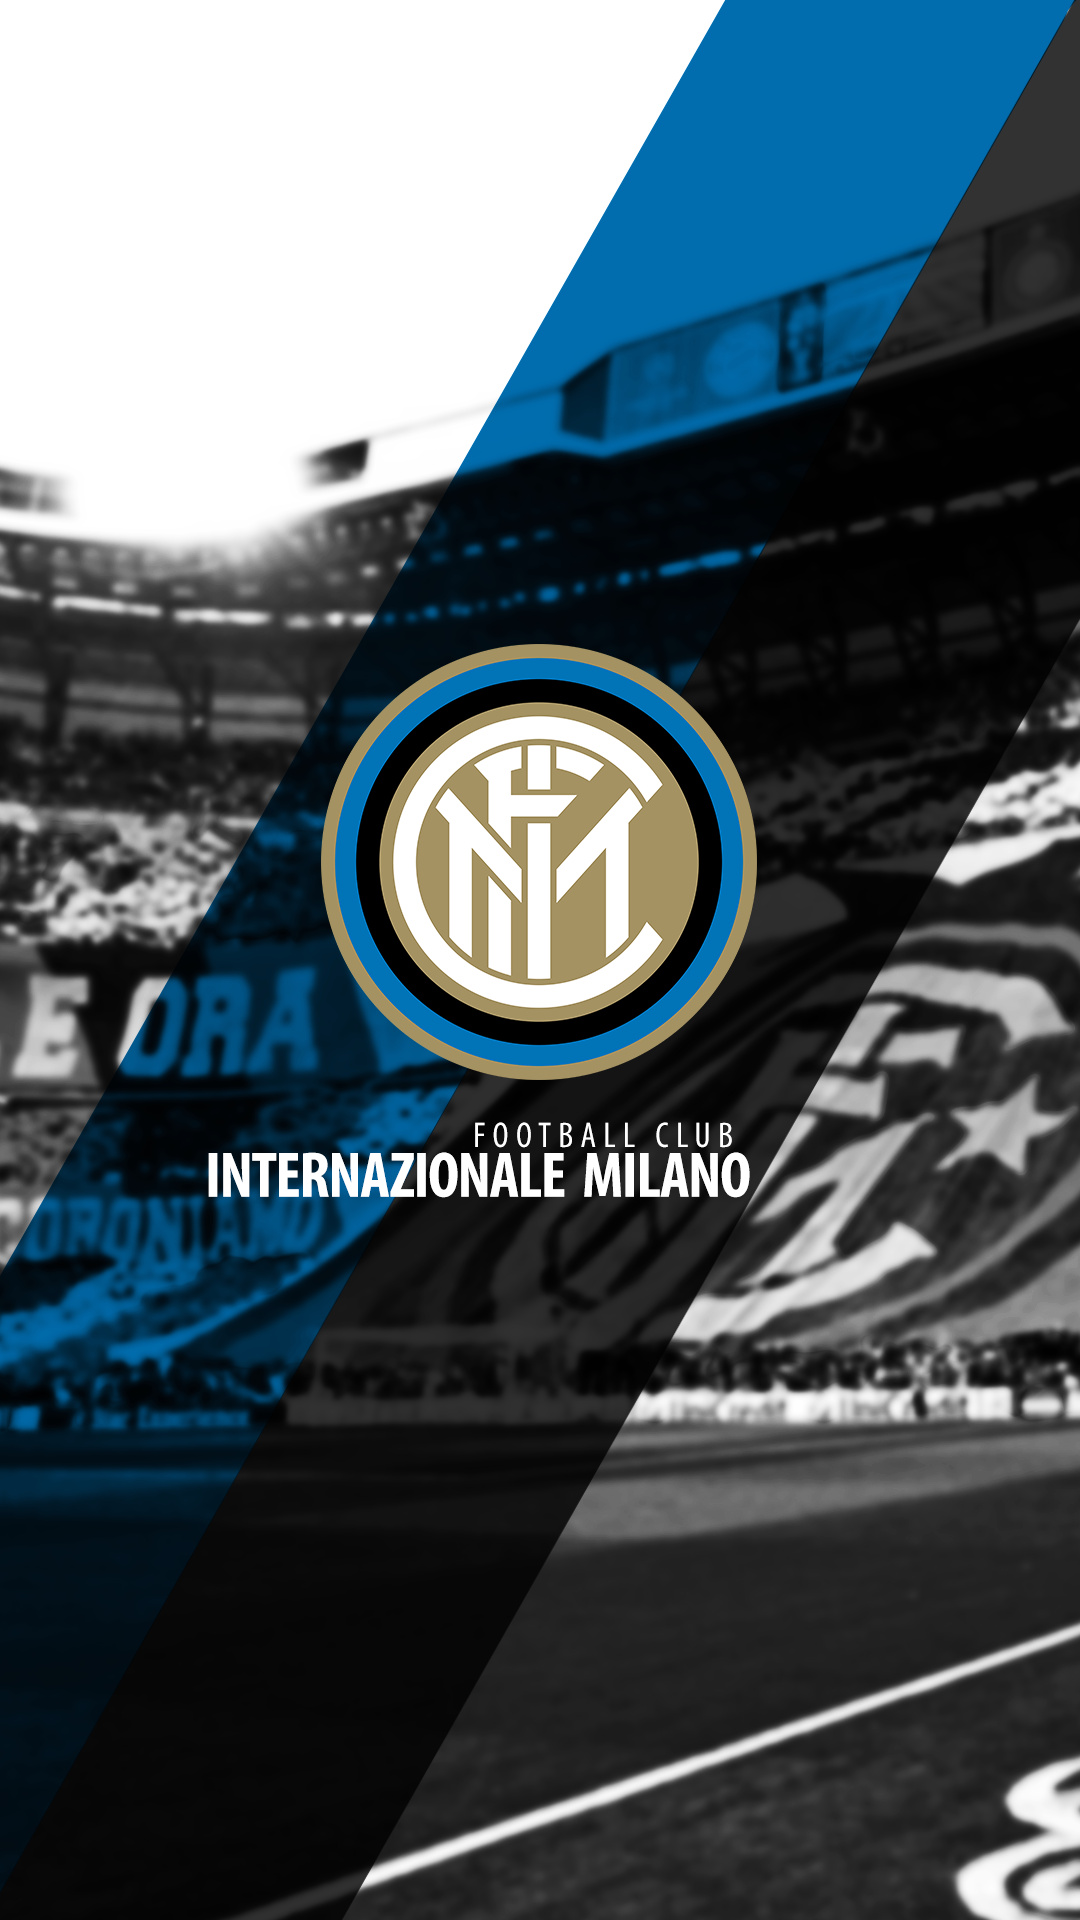 Inter: A storied Italian soccer club. 1080x1920 Full HD Wallpaper.